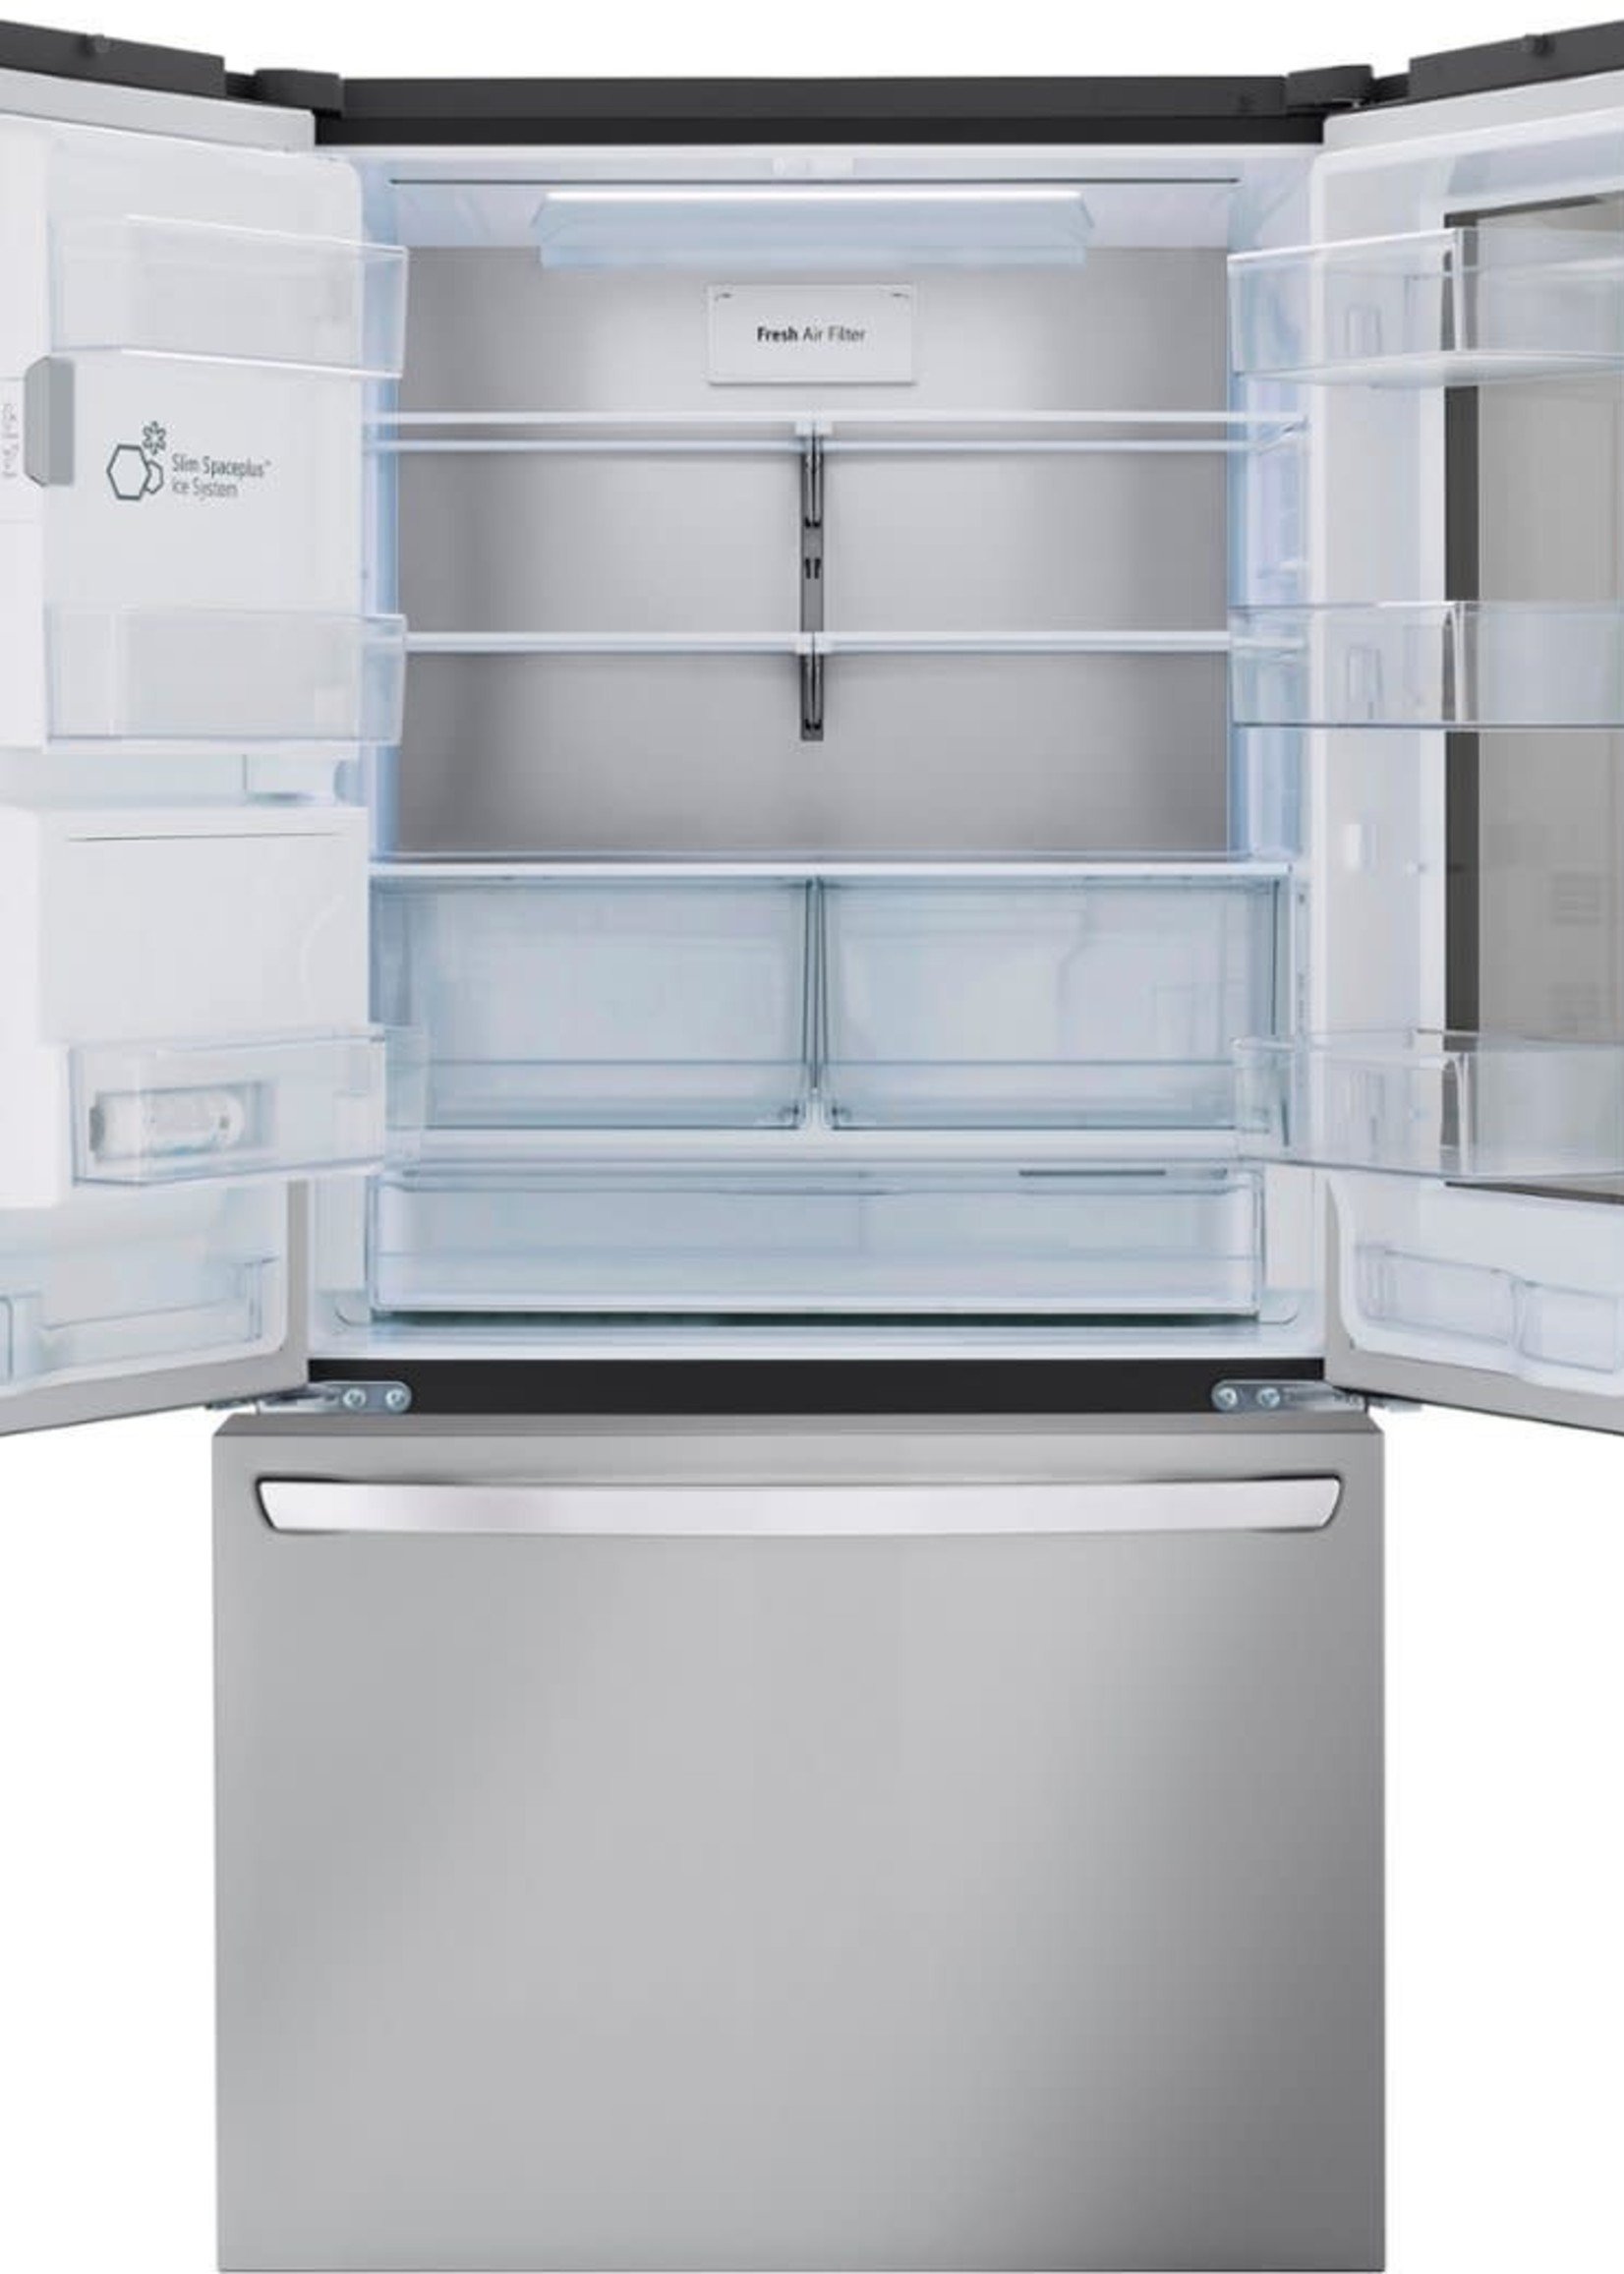 Lg Lrfoc S Cu Ft Smart Instaview Counter Depth Max French Door Refrigerator In